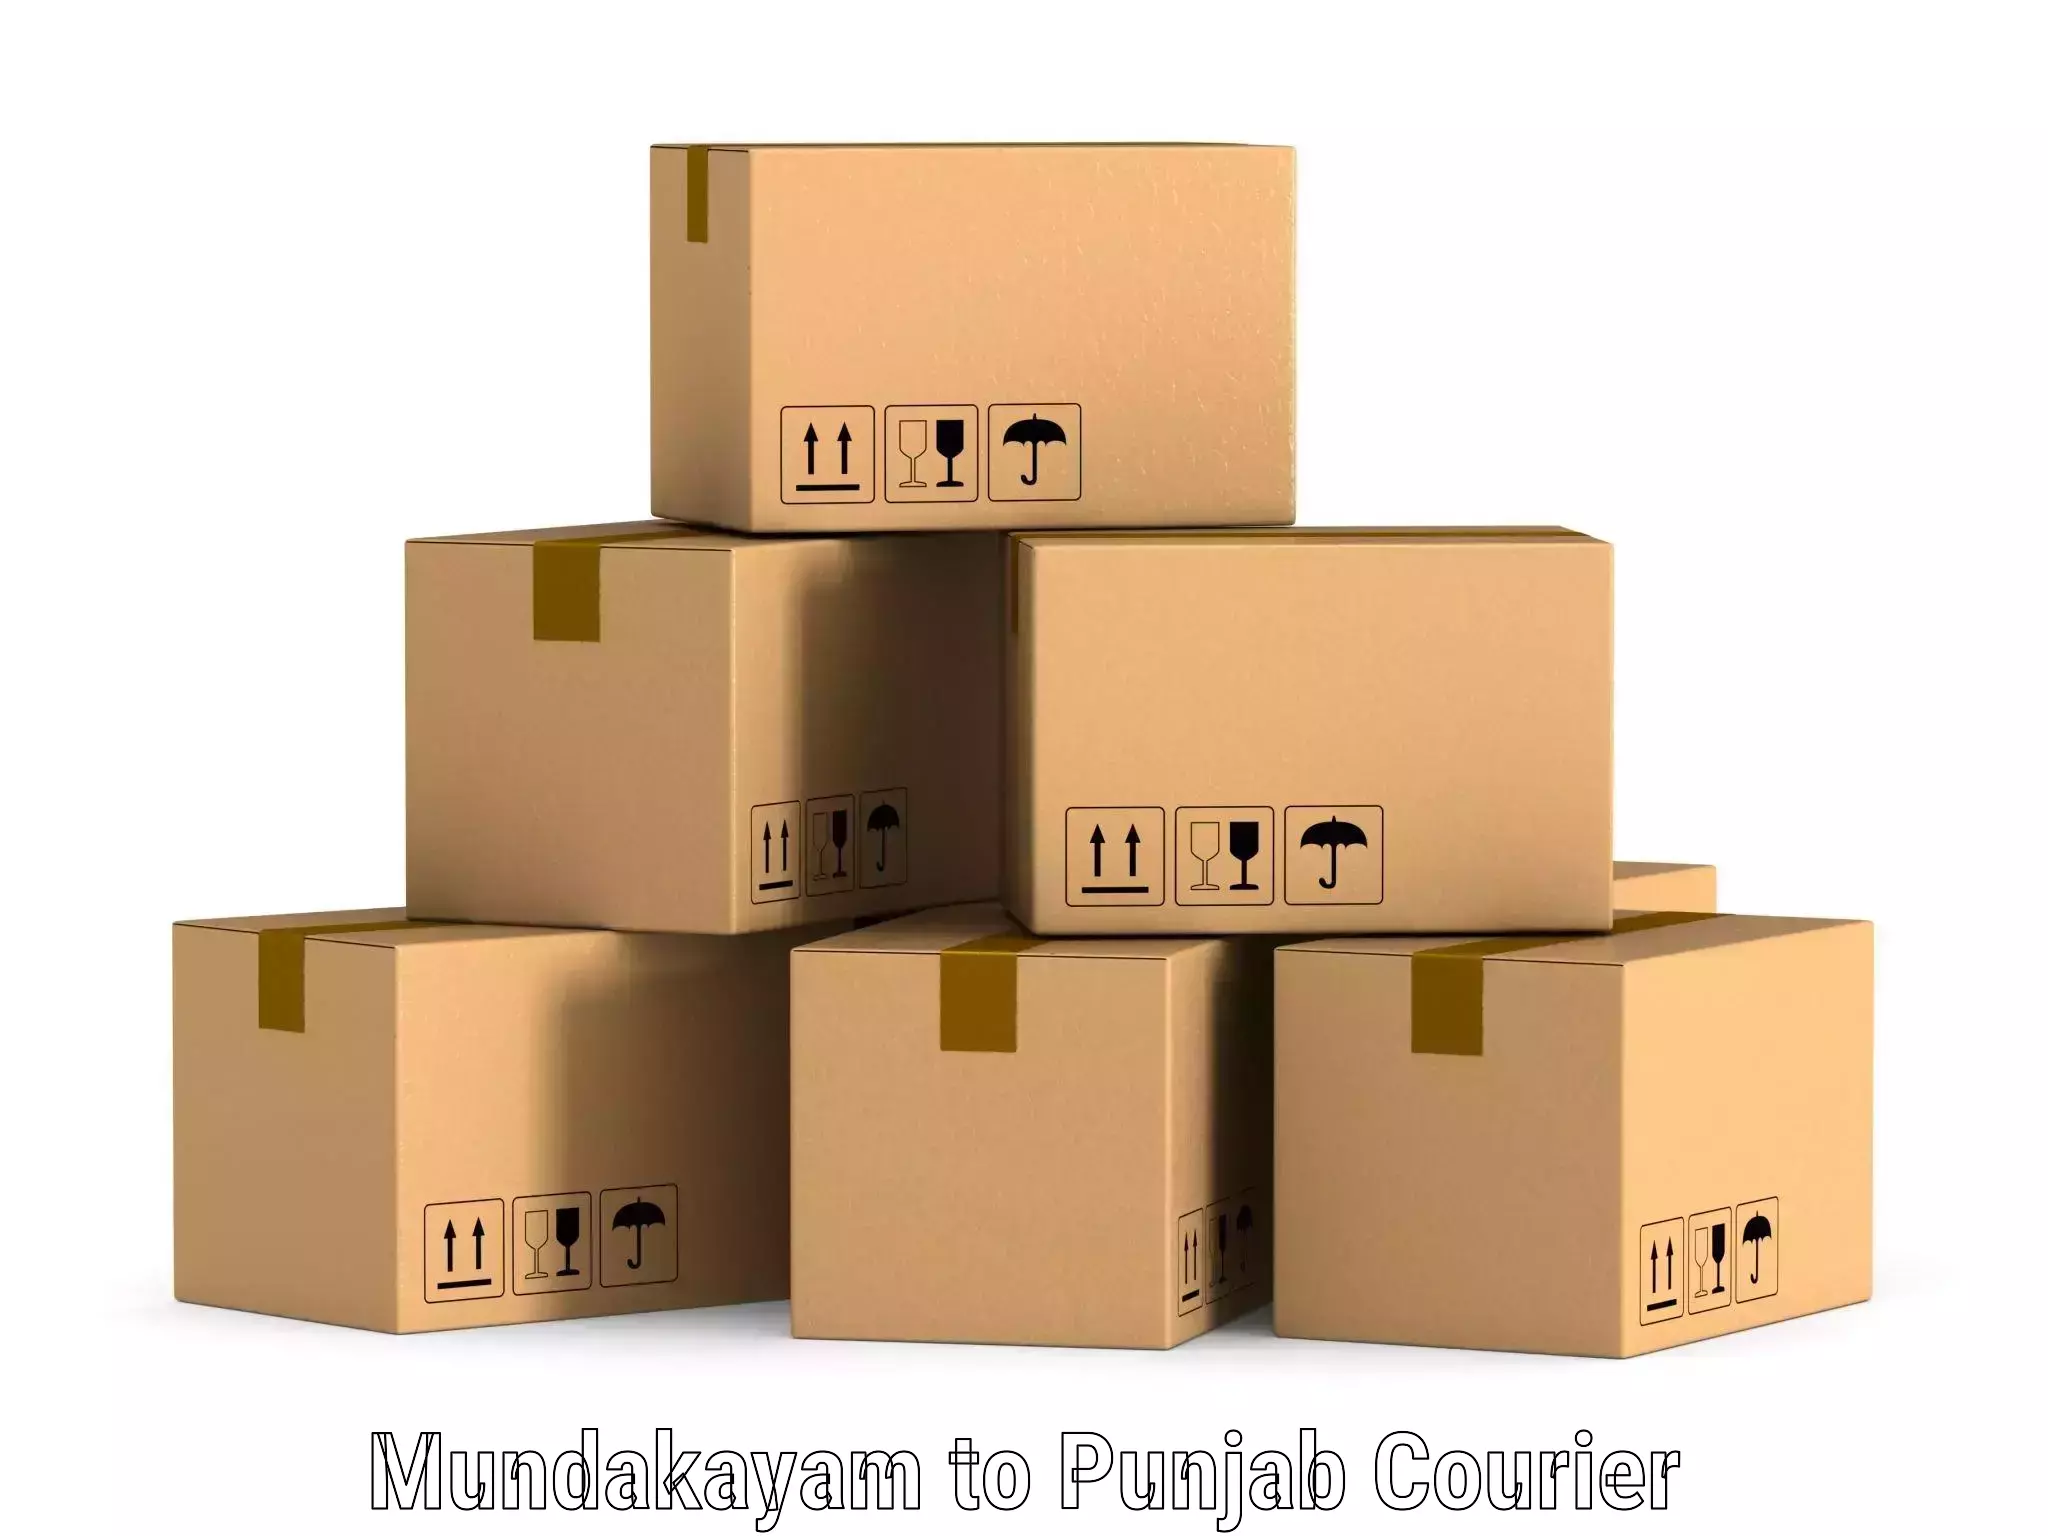 Fast shipping solutions Mundakayam to Punjab